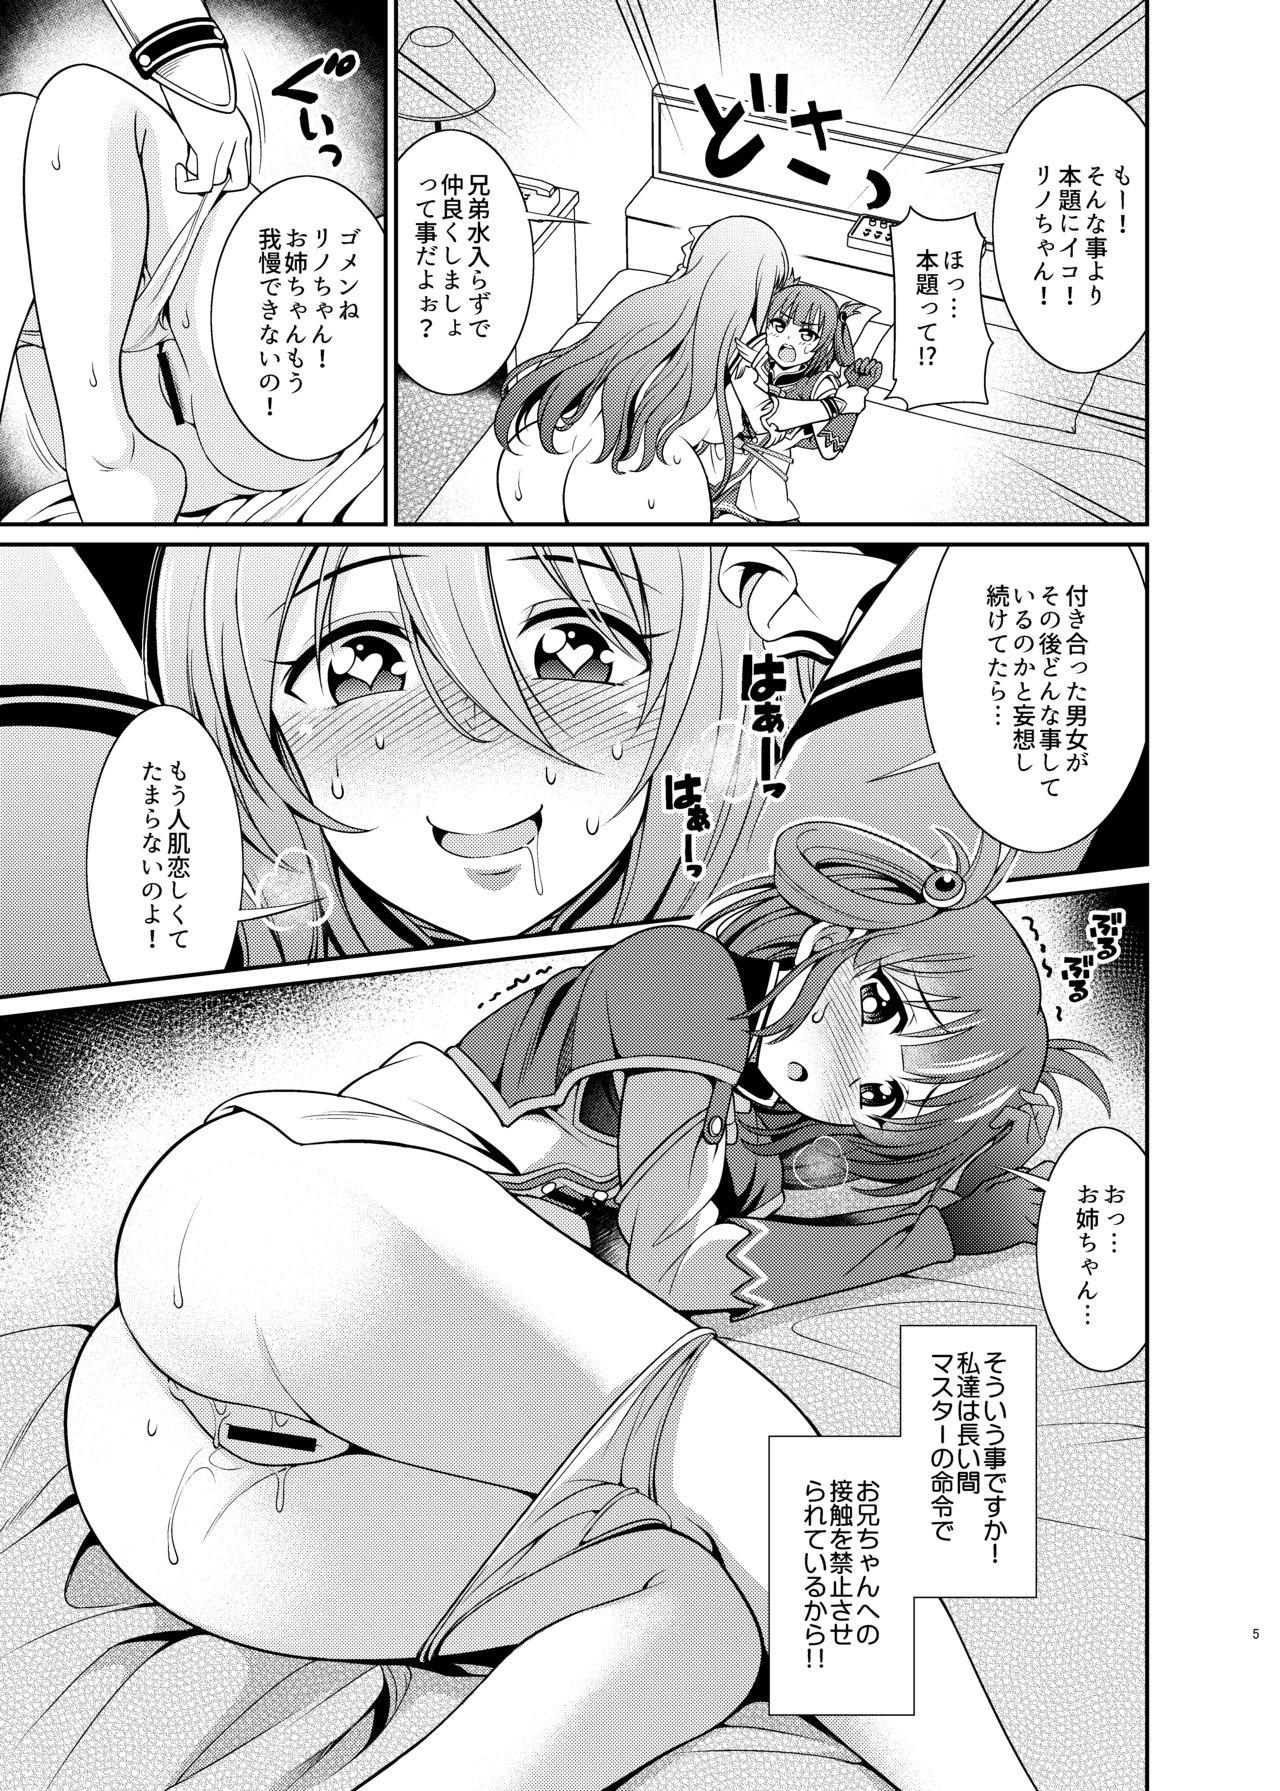 Nurugel Kinyoku Seikatsu nante Kiwameru kara... Ochinchin ga Haechaun desu yo! - Princess connect Amateurs - Page 5